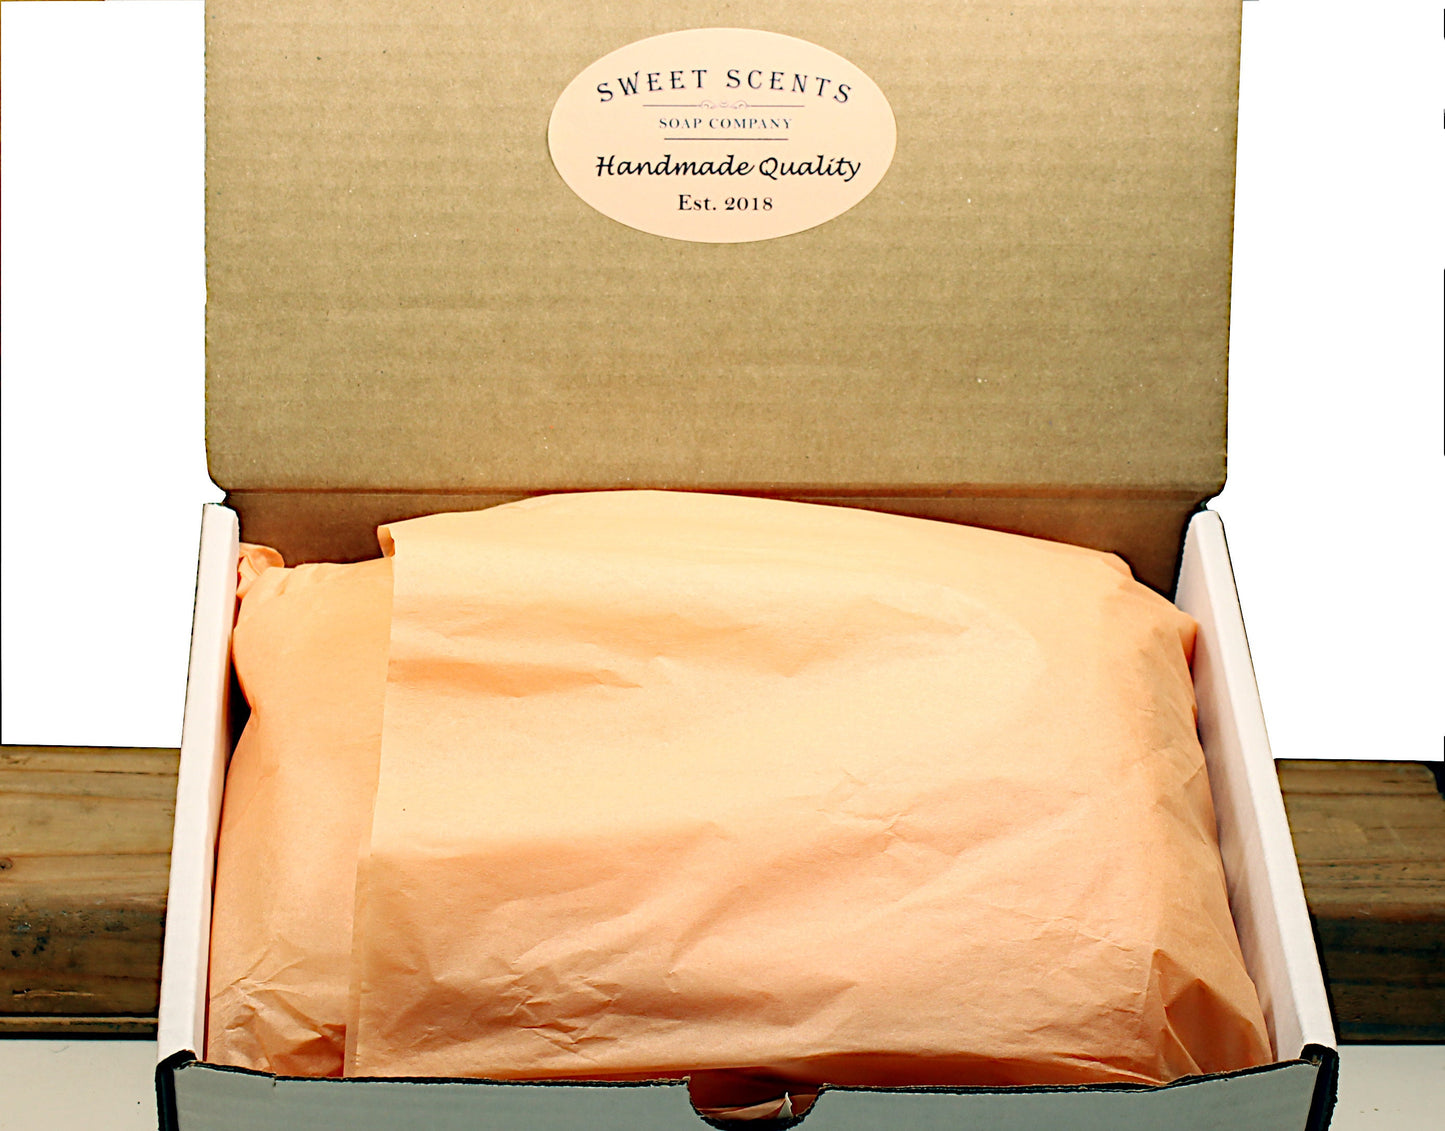 Peach Spa Gift Box